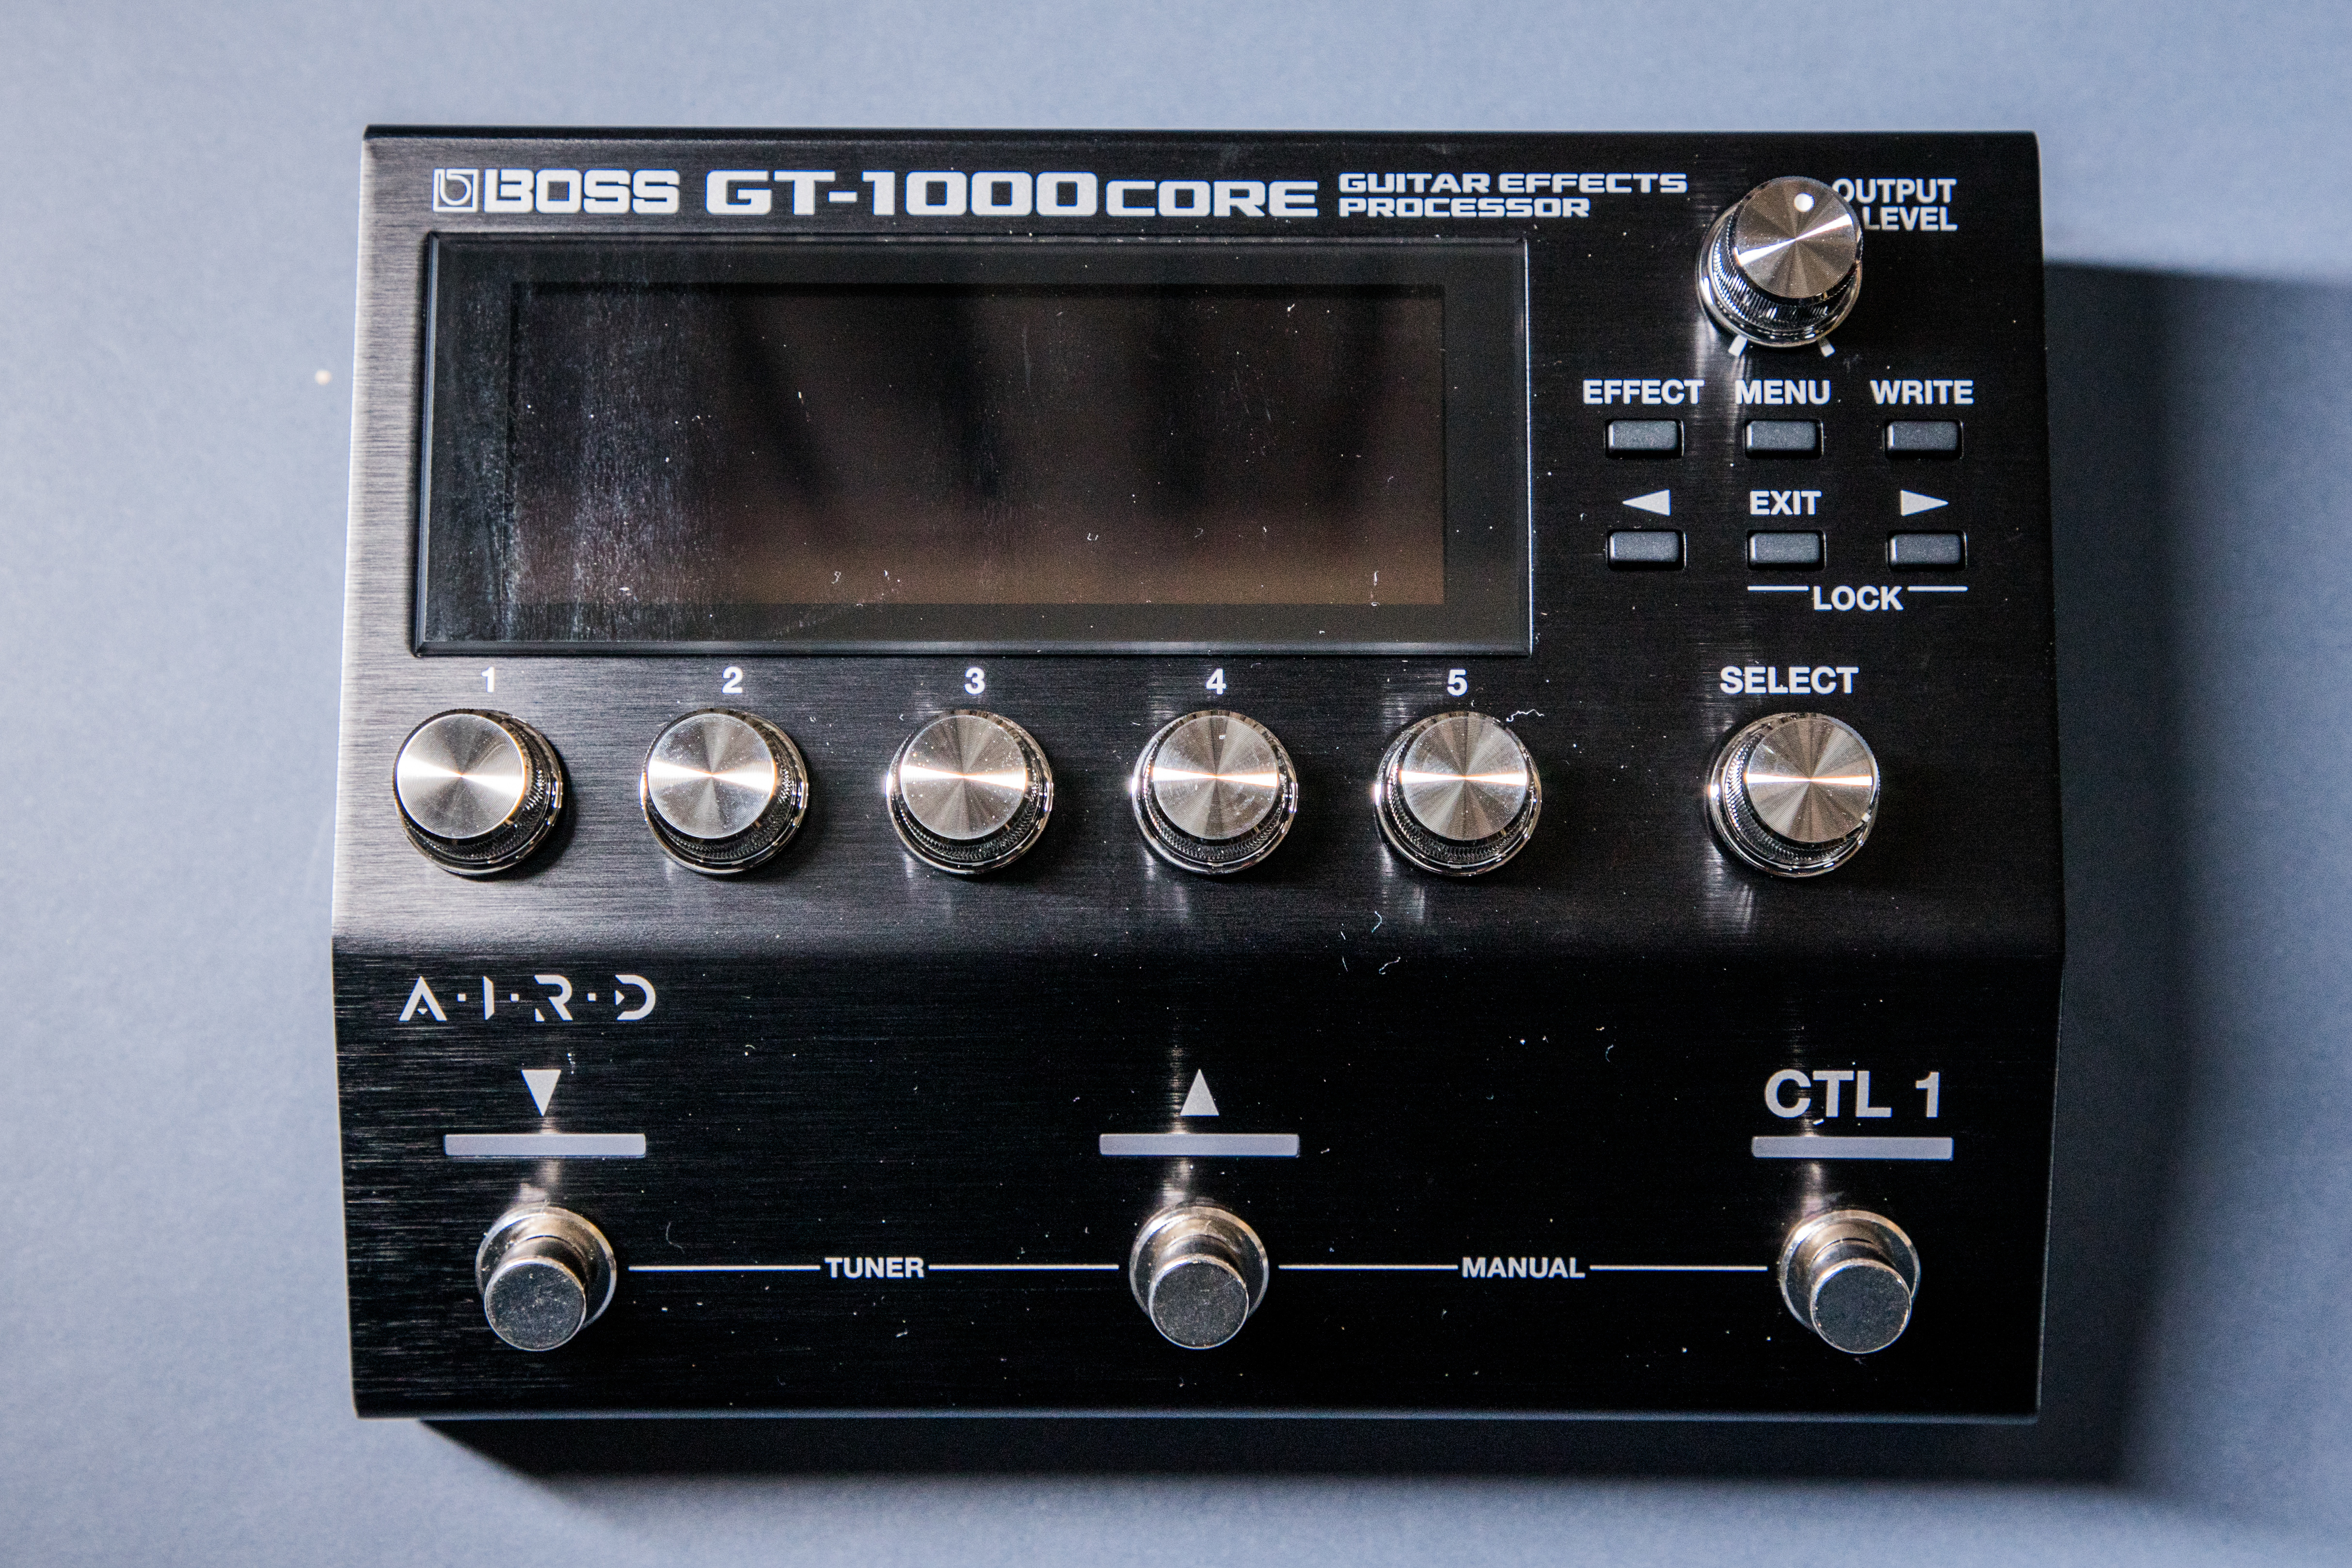 BOSS GT-1000CORE 綜合效果器